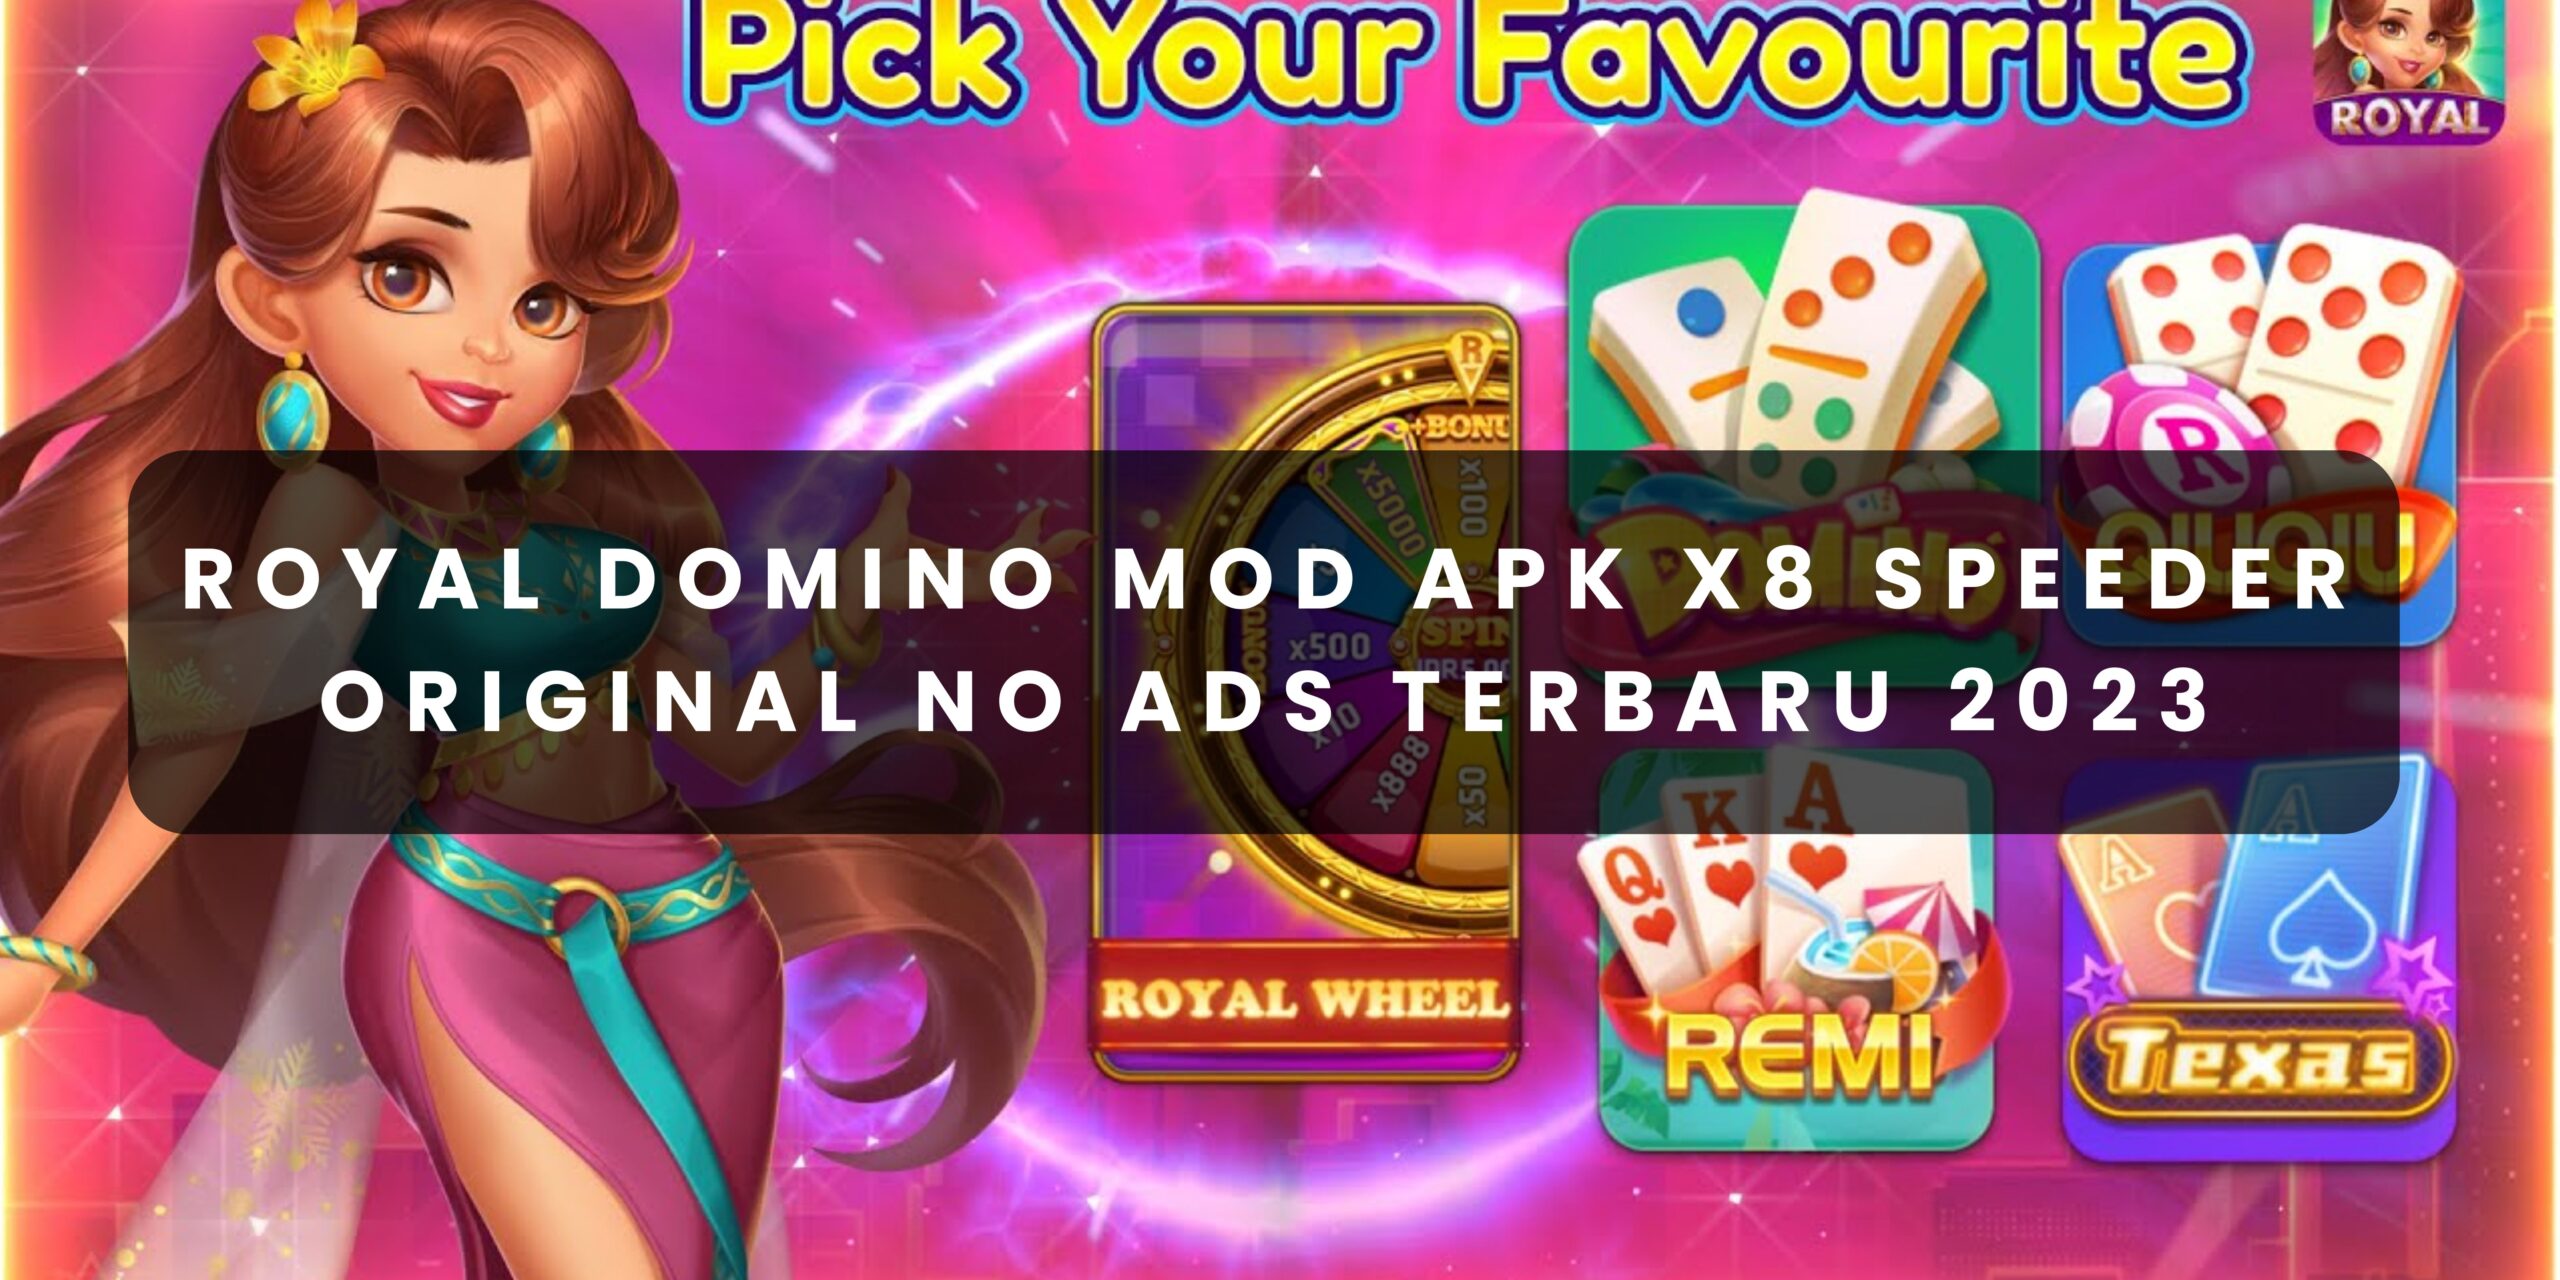 Royal Domino Mod Apk X8 Speeder Original No Ads Terbaru 2023